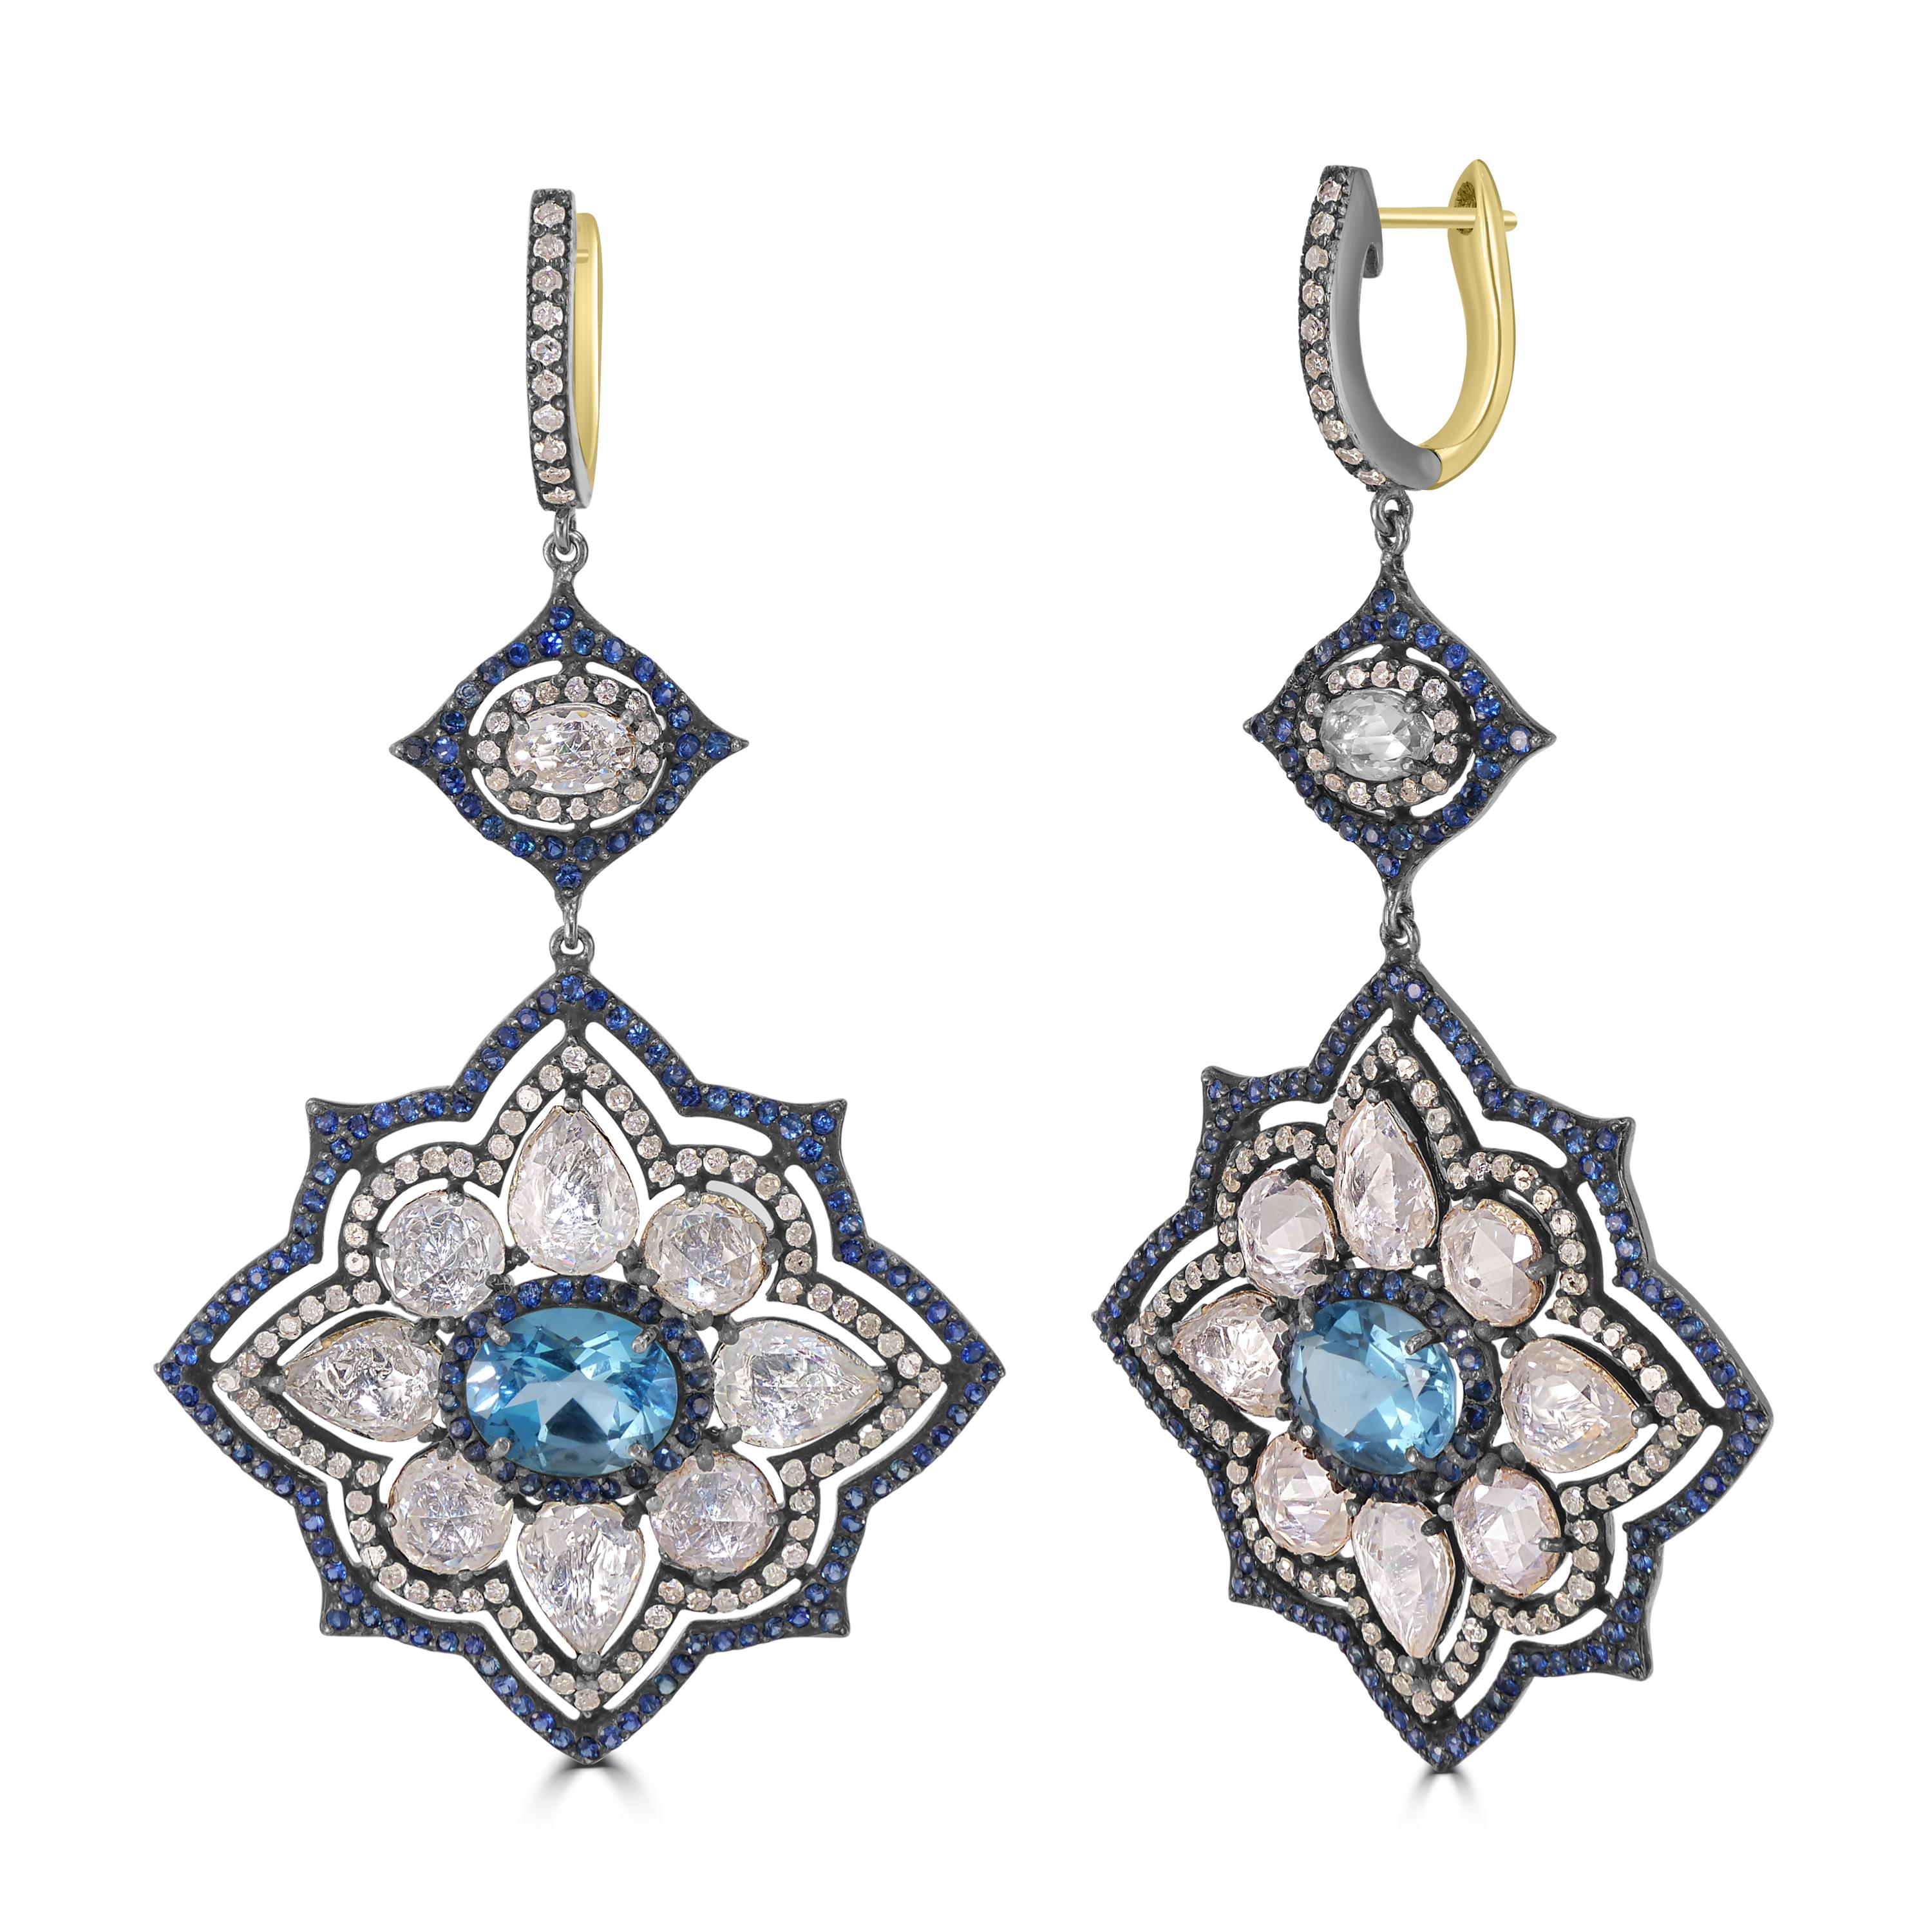 Erhöhen Sie Ihre Eleganz mit unserem Victorian 24,87 Cttw. Blumenförmige Ohrringe mit Saphir, Blautopas und Diamant - ein Meisterwerk von zeitloser Schönheit und aufwändiger Handwerkskunst. Der Tropfen dieser exquisiten Ohrringe enthüllt ein